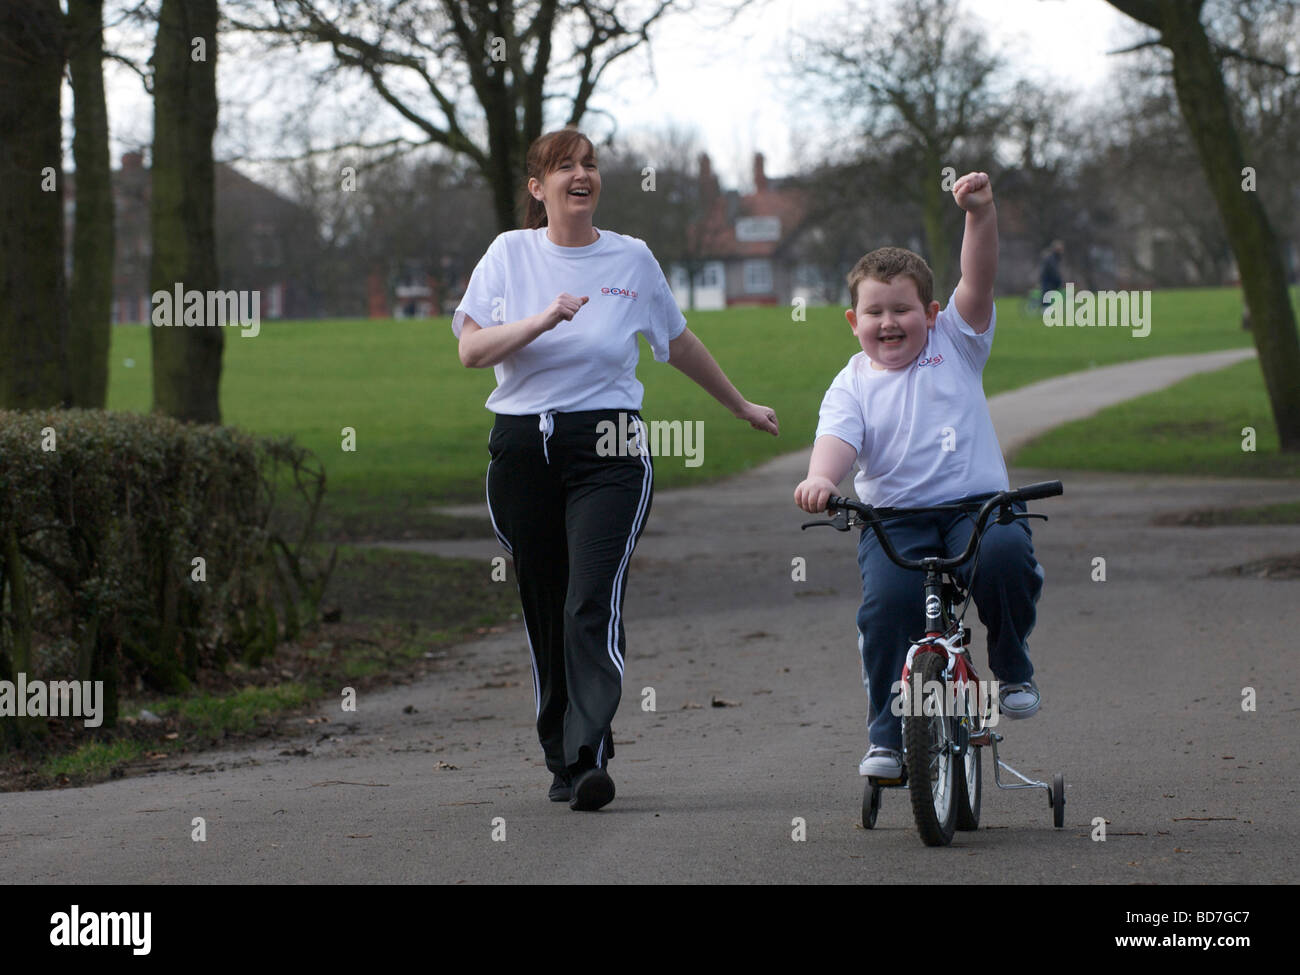 Mutter und übergewichtige Kind auf einen gesunden Lebensstil-Programm "Ziele" spazieren fahren in einem Park in Liverpool. Stockfoto